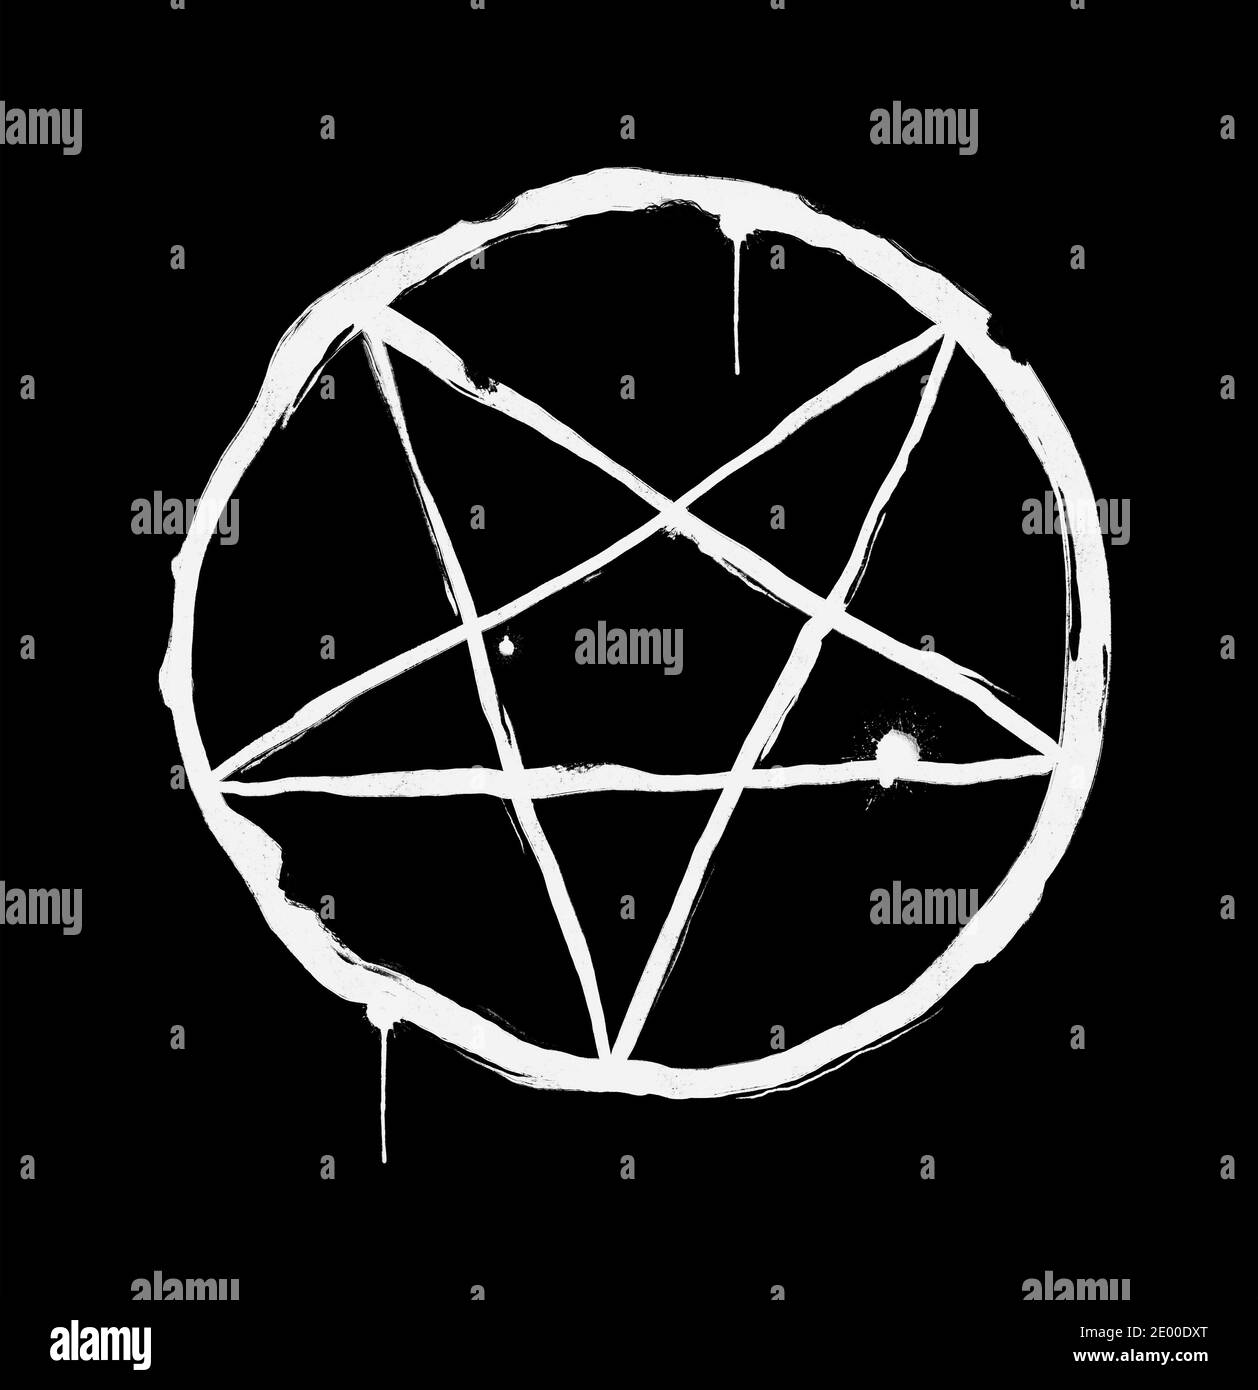 Pentagramma invertito nel cerchio come simbolo di satanismo e sez satanista. Illustrazione robusta, grintosa e ruvida disegnata a mano su sfondo nero scuro Foto Stock